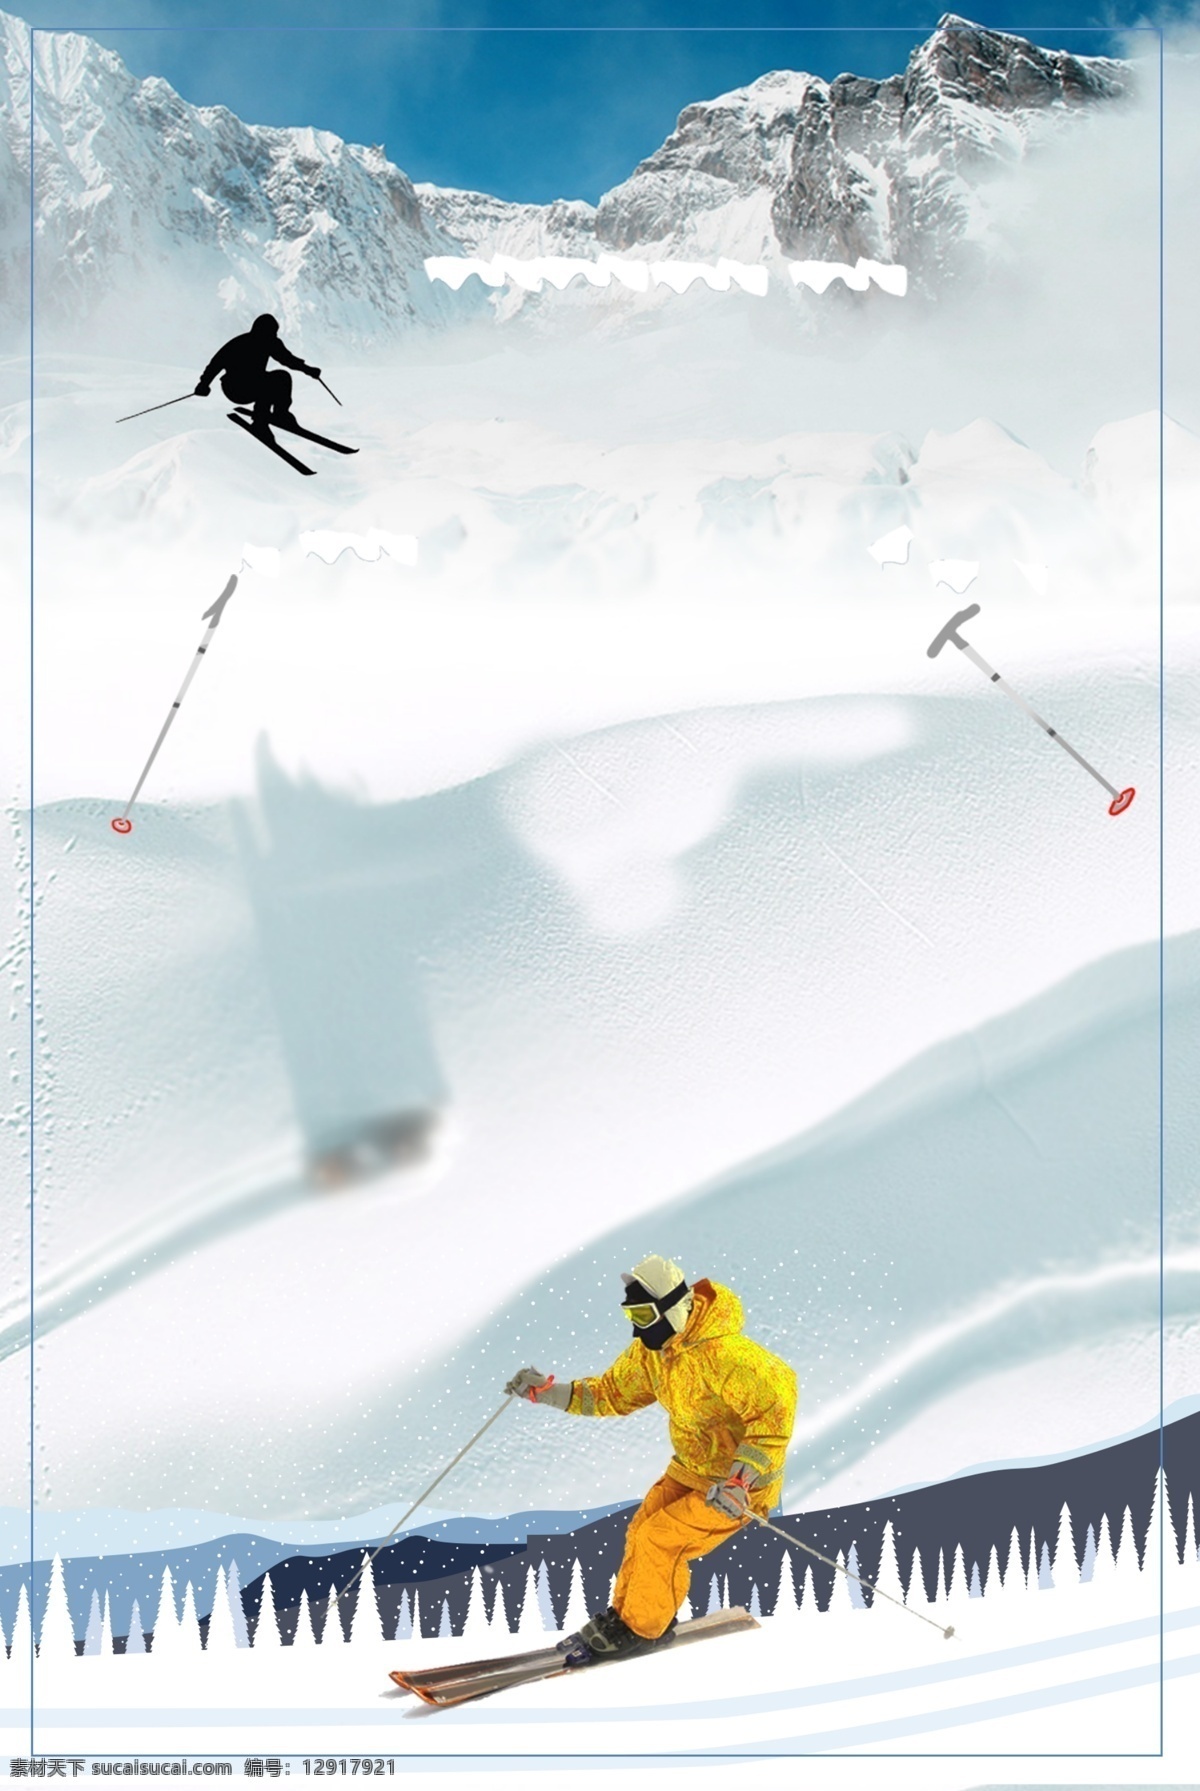 冬季 雪场 滑雪 背景 滑雪场 海报背景 冬天 冰雪 雪花 滑雪活动场 滑雪比赛 滑雪活动背景 冬季活动背景 滑雪展板 滑雪素材